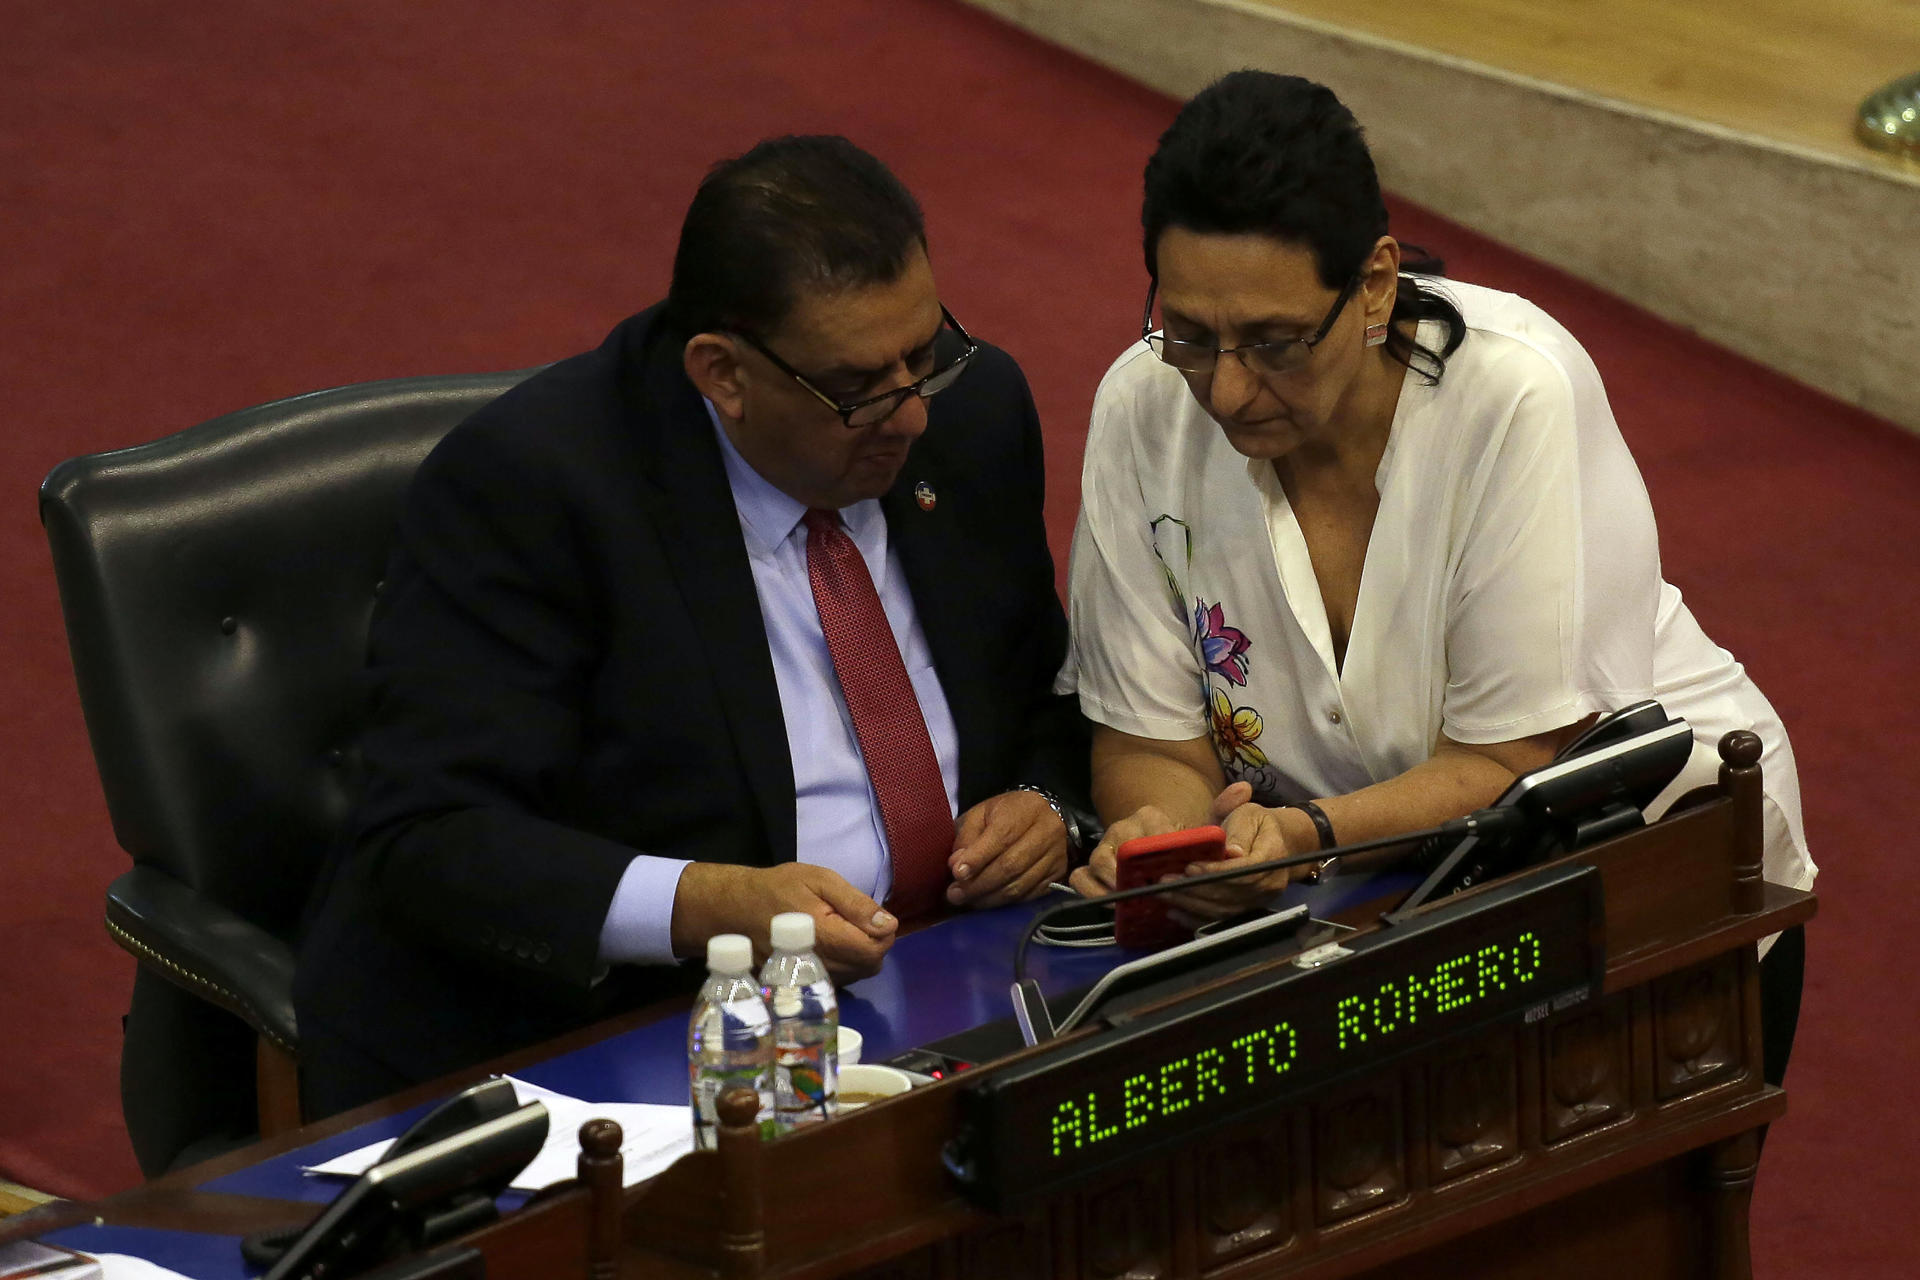 Fotografía de archivo en la que se registró al diputado Alberto Romero (i), durante una sesión plenaria de la Asamblea Legislativa de El Salvador, en la capital salvadoreña. EFE/Rodrigo Sura